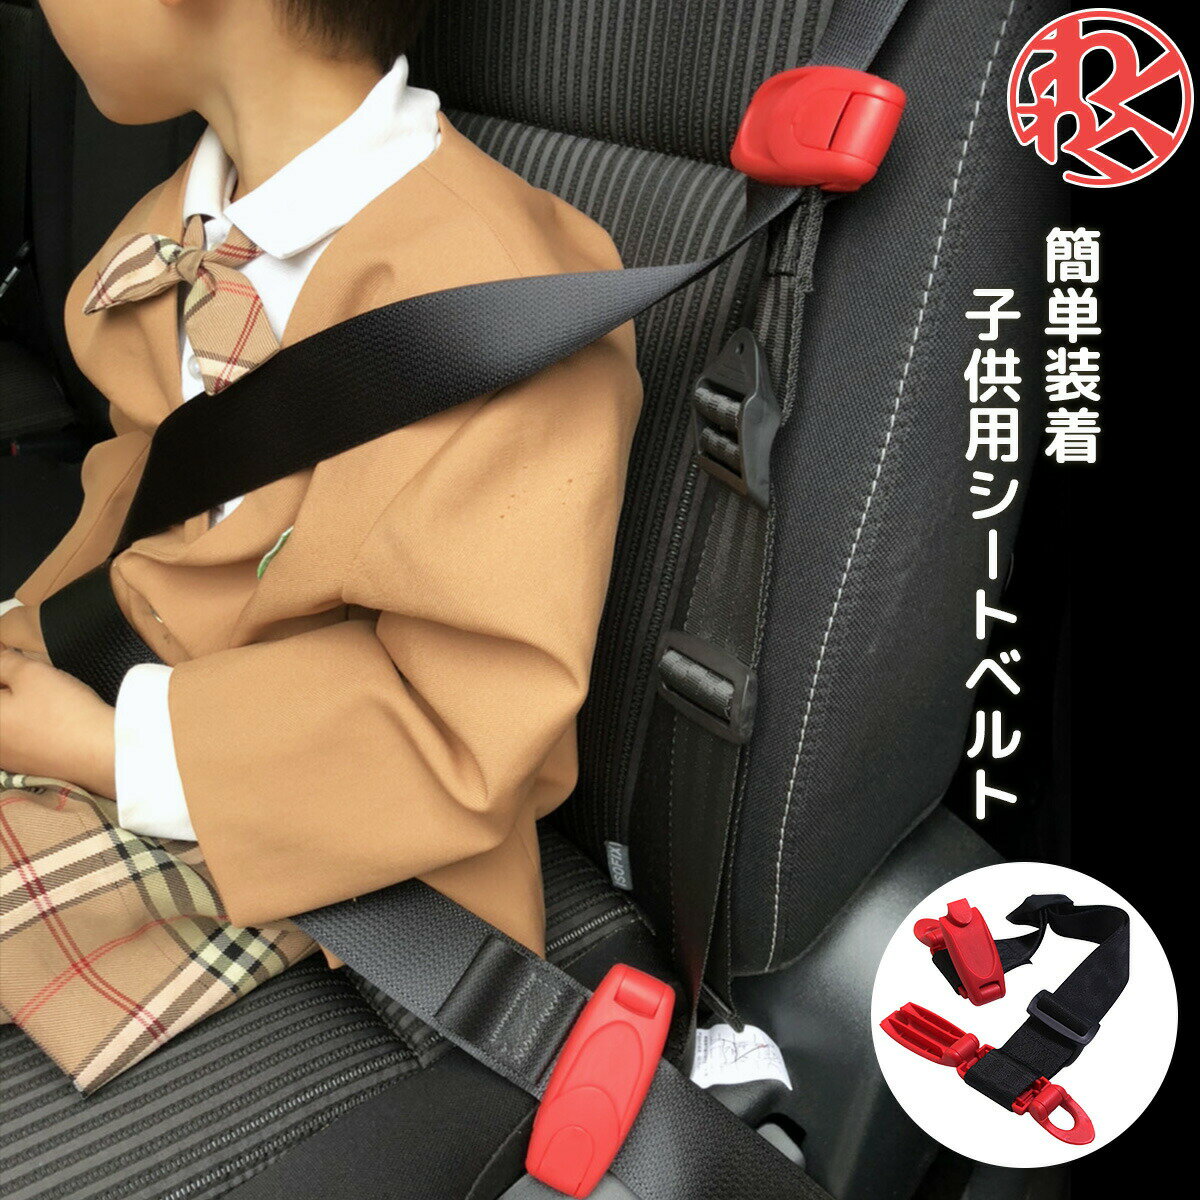 TOYOTA シートベルトエクステンダー タイプG 21.4cm 延長 用 シートベルト USトヨタ 純正品